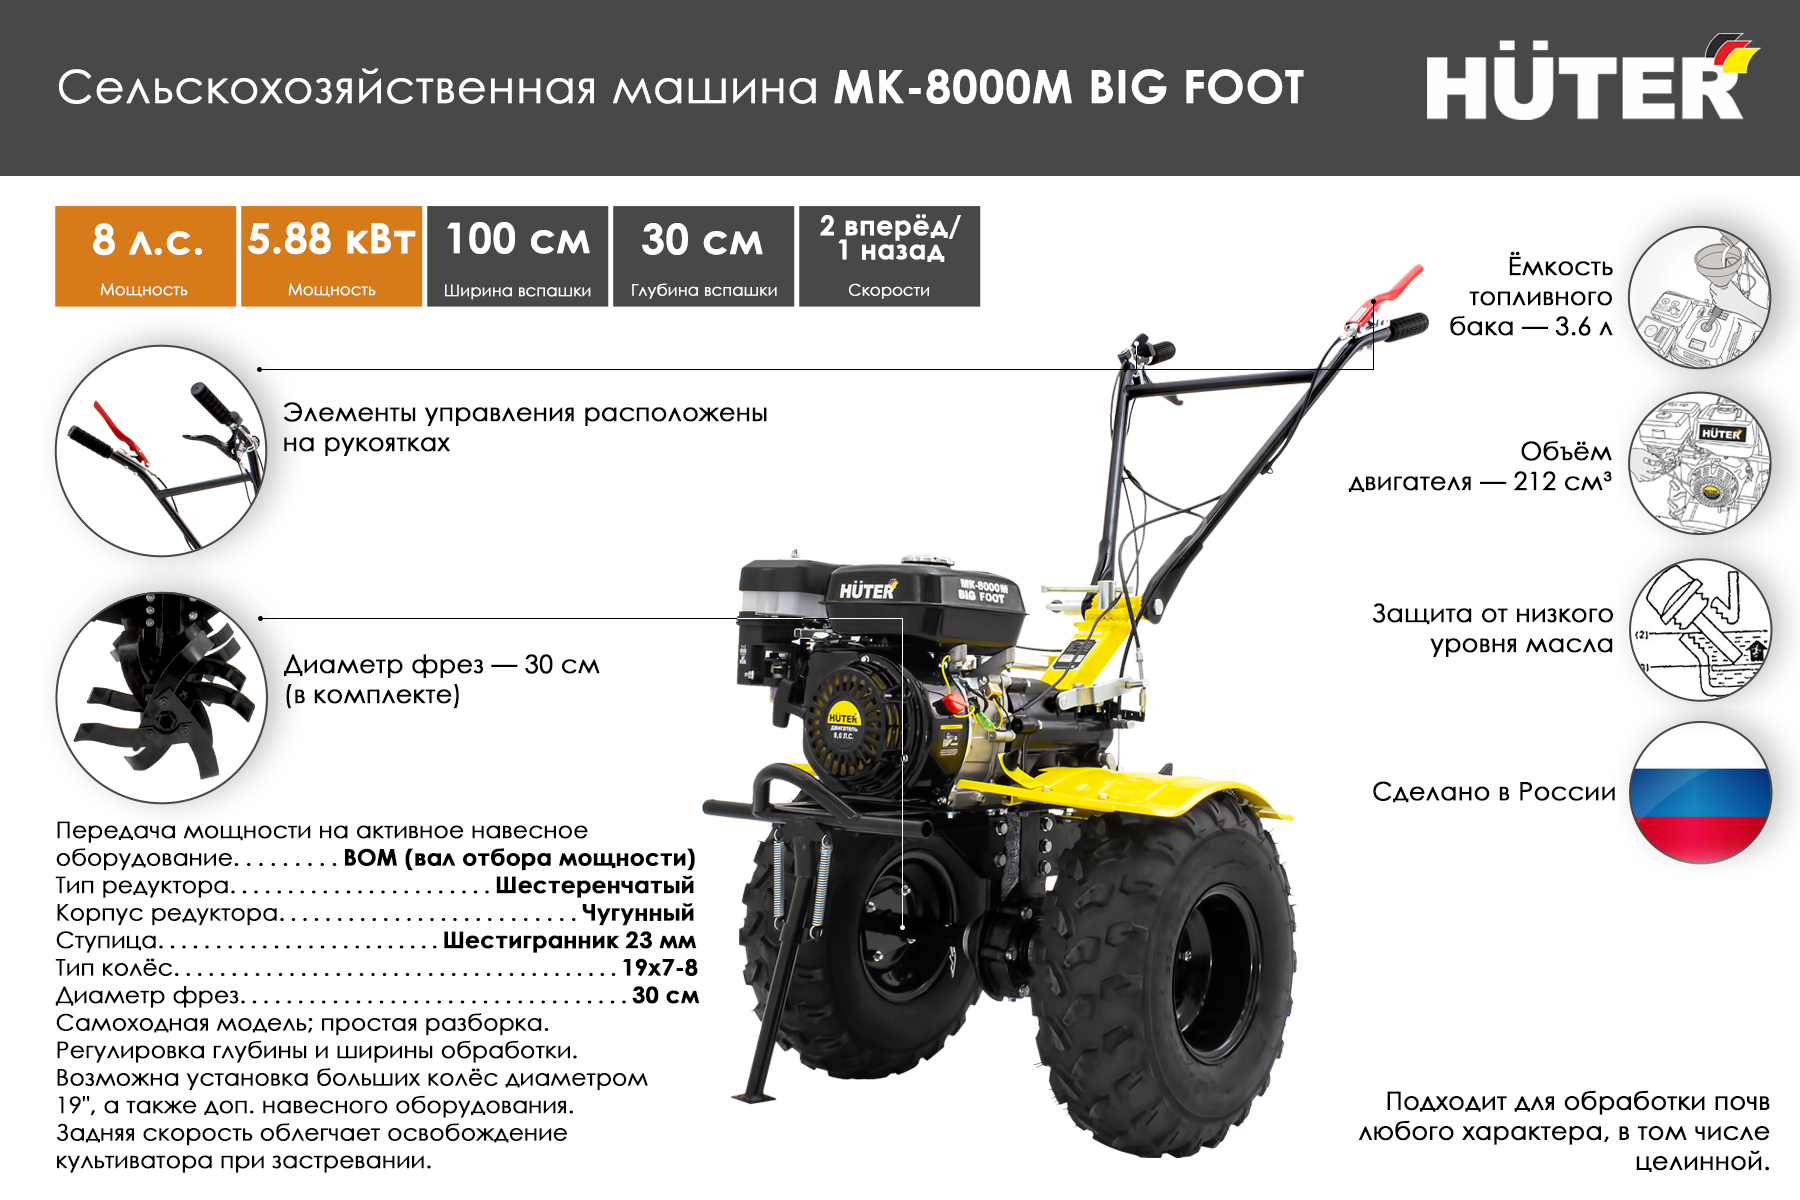 Сельскохозяйственная машина HUTER МК-8000М BIG FOOT 70/5/13